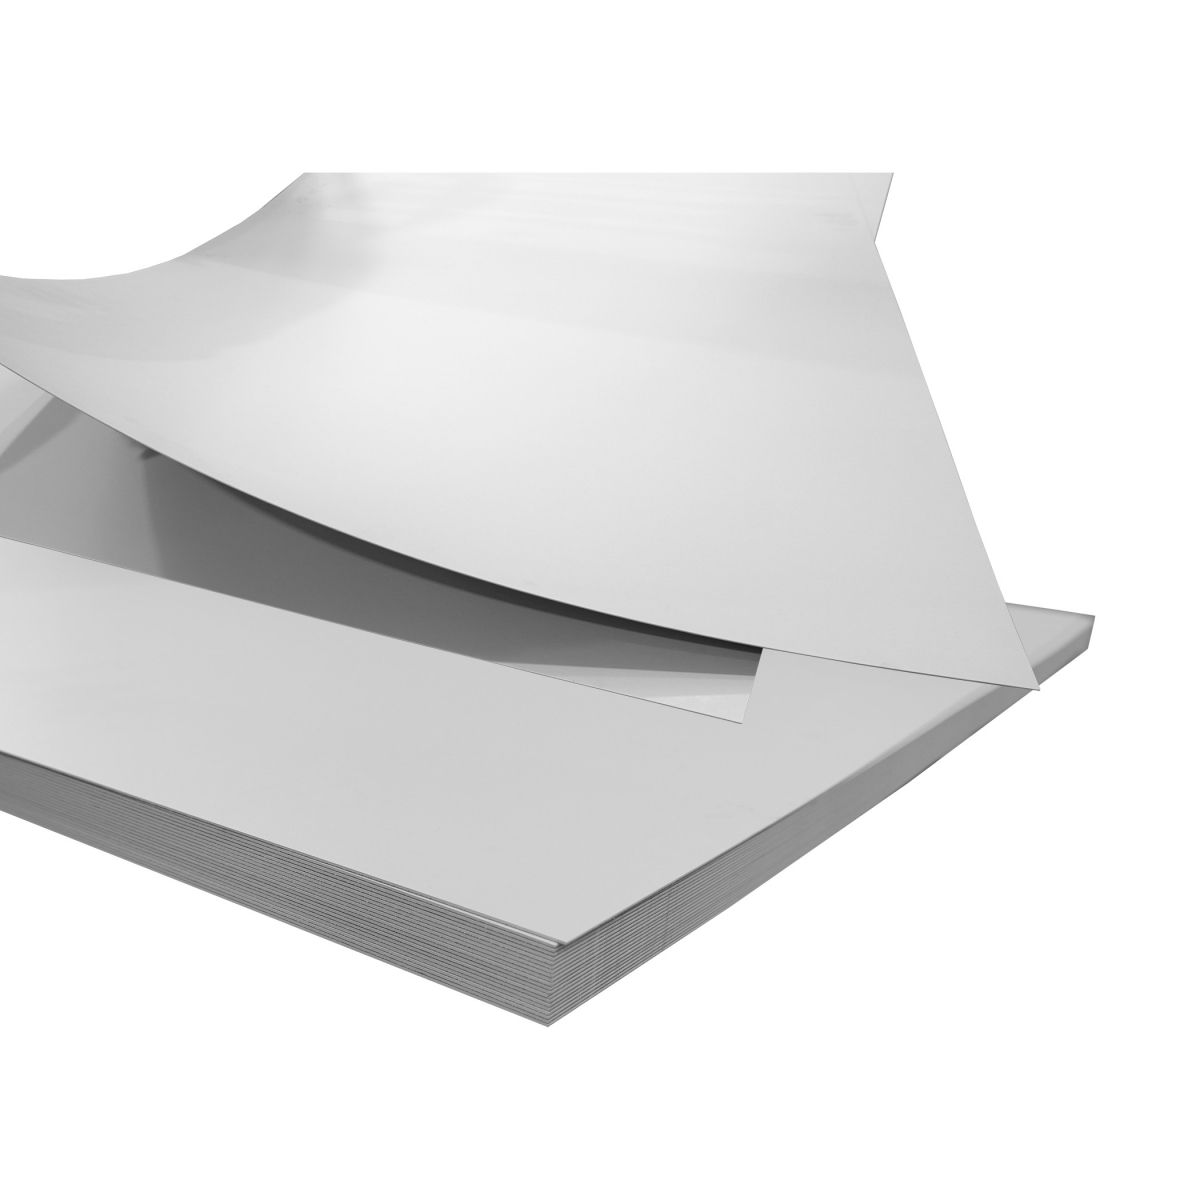 Platte grau 200 x 100 cm 0,8 mm Dicke; PVC beschichtet; Verbundblech Platte grau 200 x 100 cm 0,8 mm Dicke; PVC beschichtet; Verbundblech